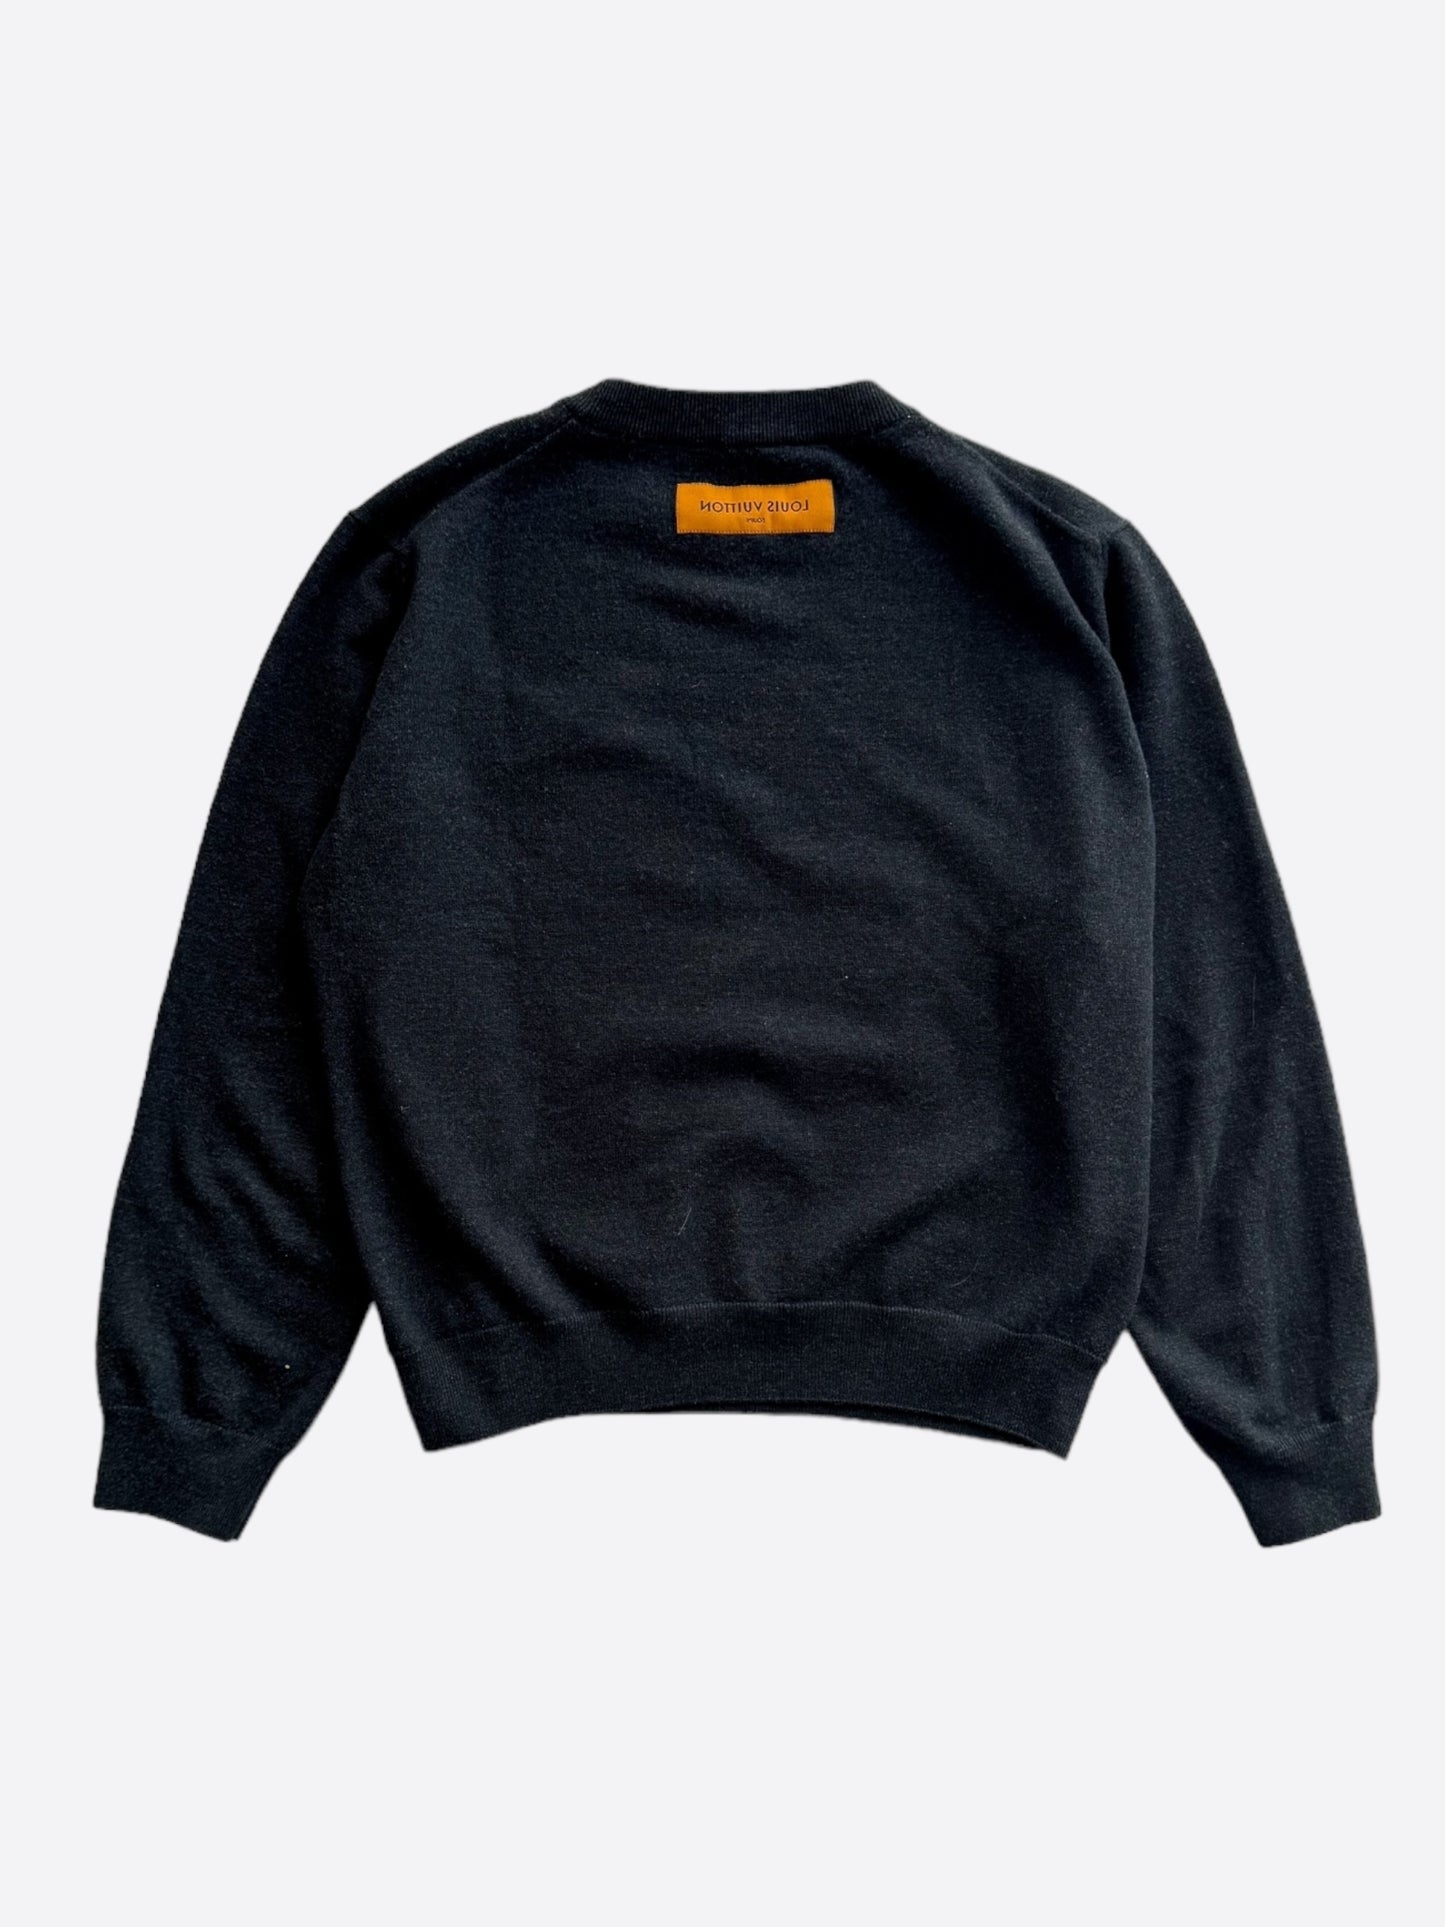 Louis Vuitton Charcoal Grey Employee Sweater